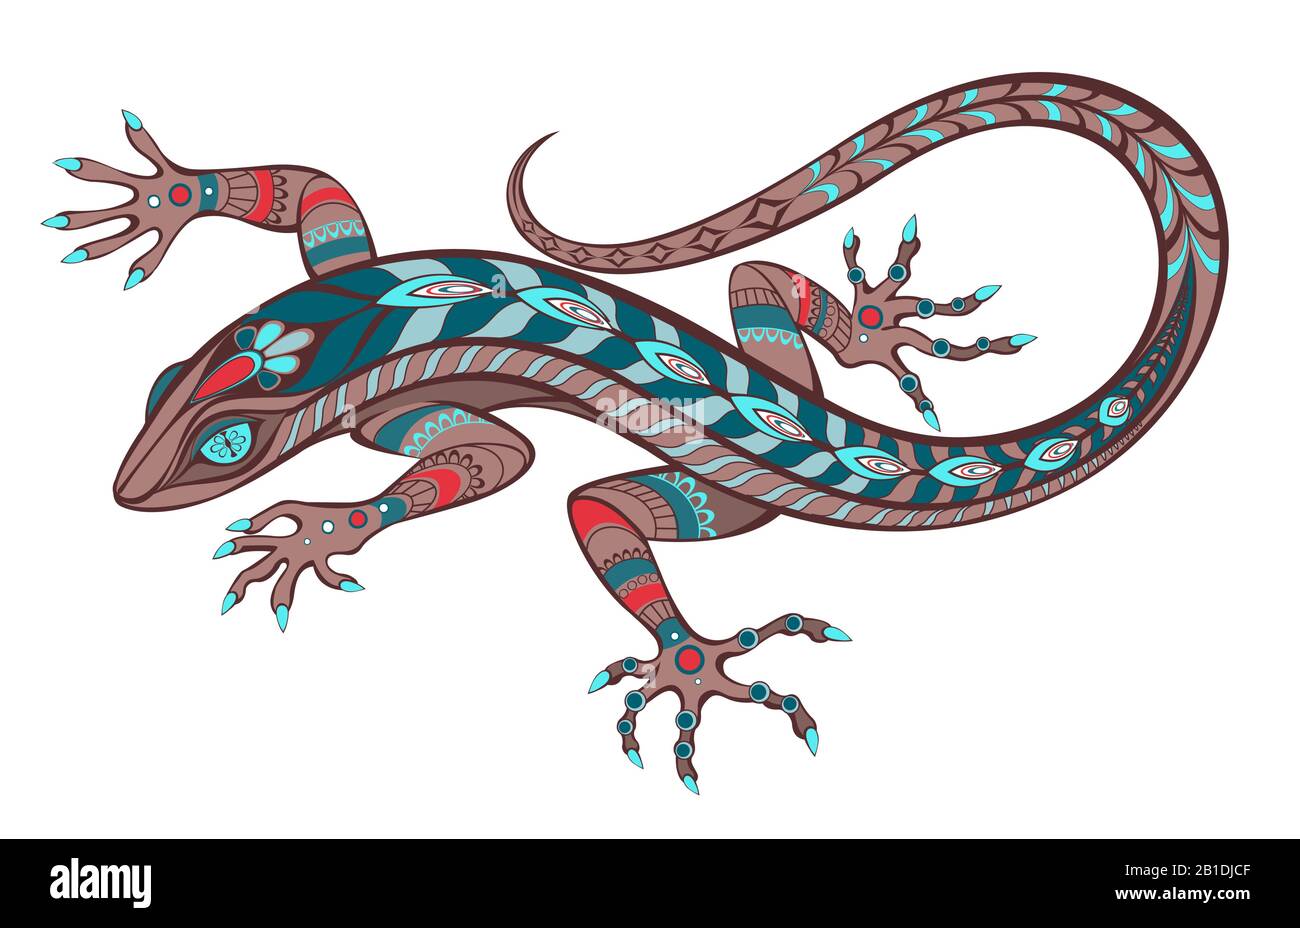 Motivi geometrici, artistici, esotici, luminosi lizard, decorati con turchese, marrone e rosso su sfondo bianco. Stile tatuaggio. Illustrazione Vettoriale